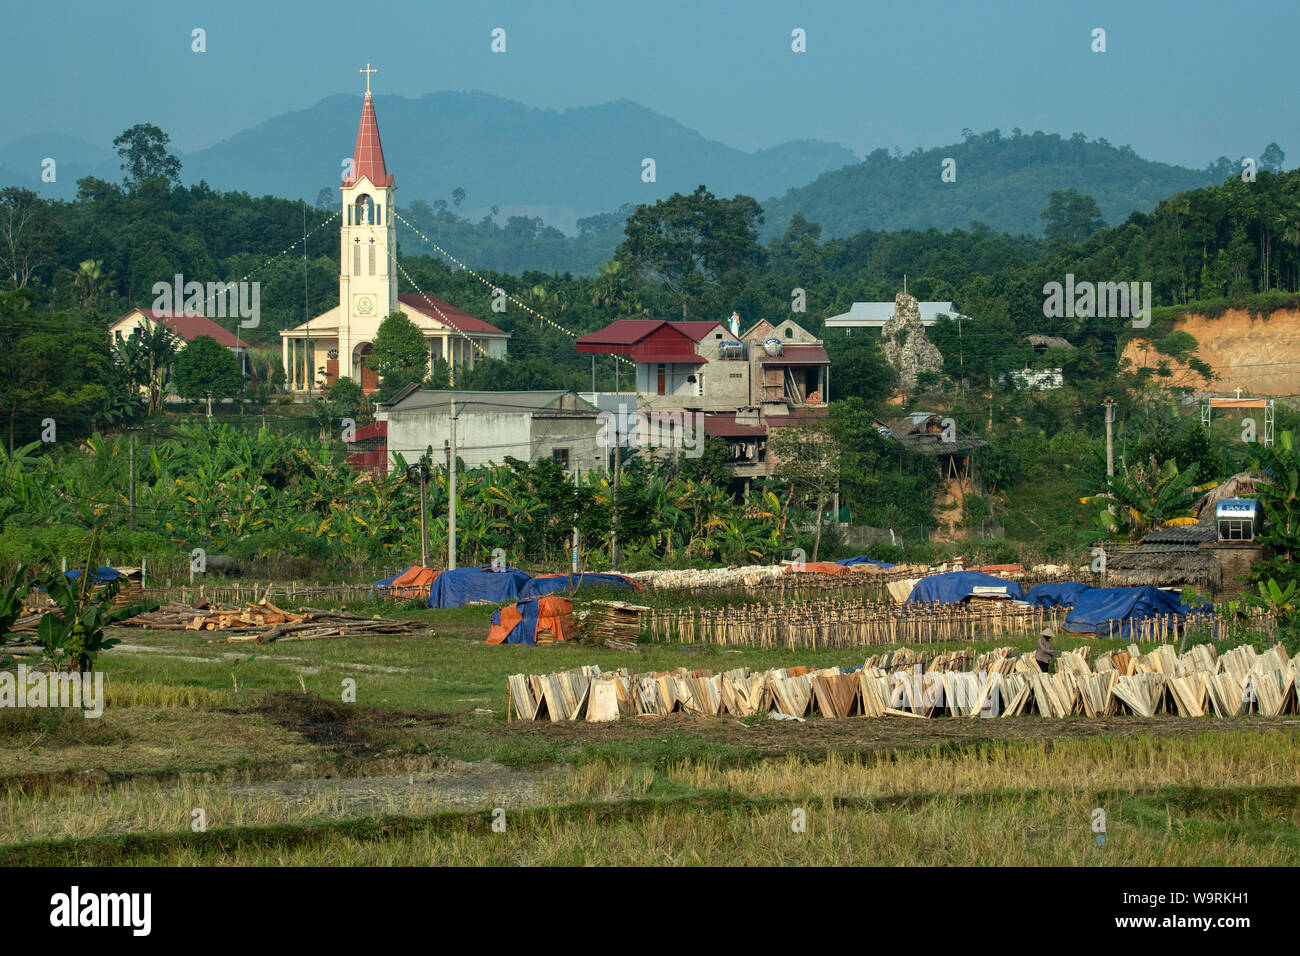 Asien, Asien, Südostasien, Vietnam, Nordirland, katholische Kirche in der Landschaft *** Local Caption *** Stockfoto